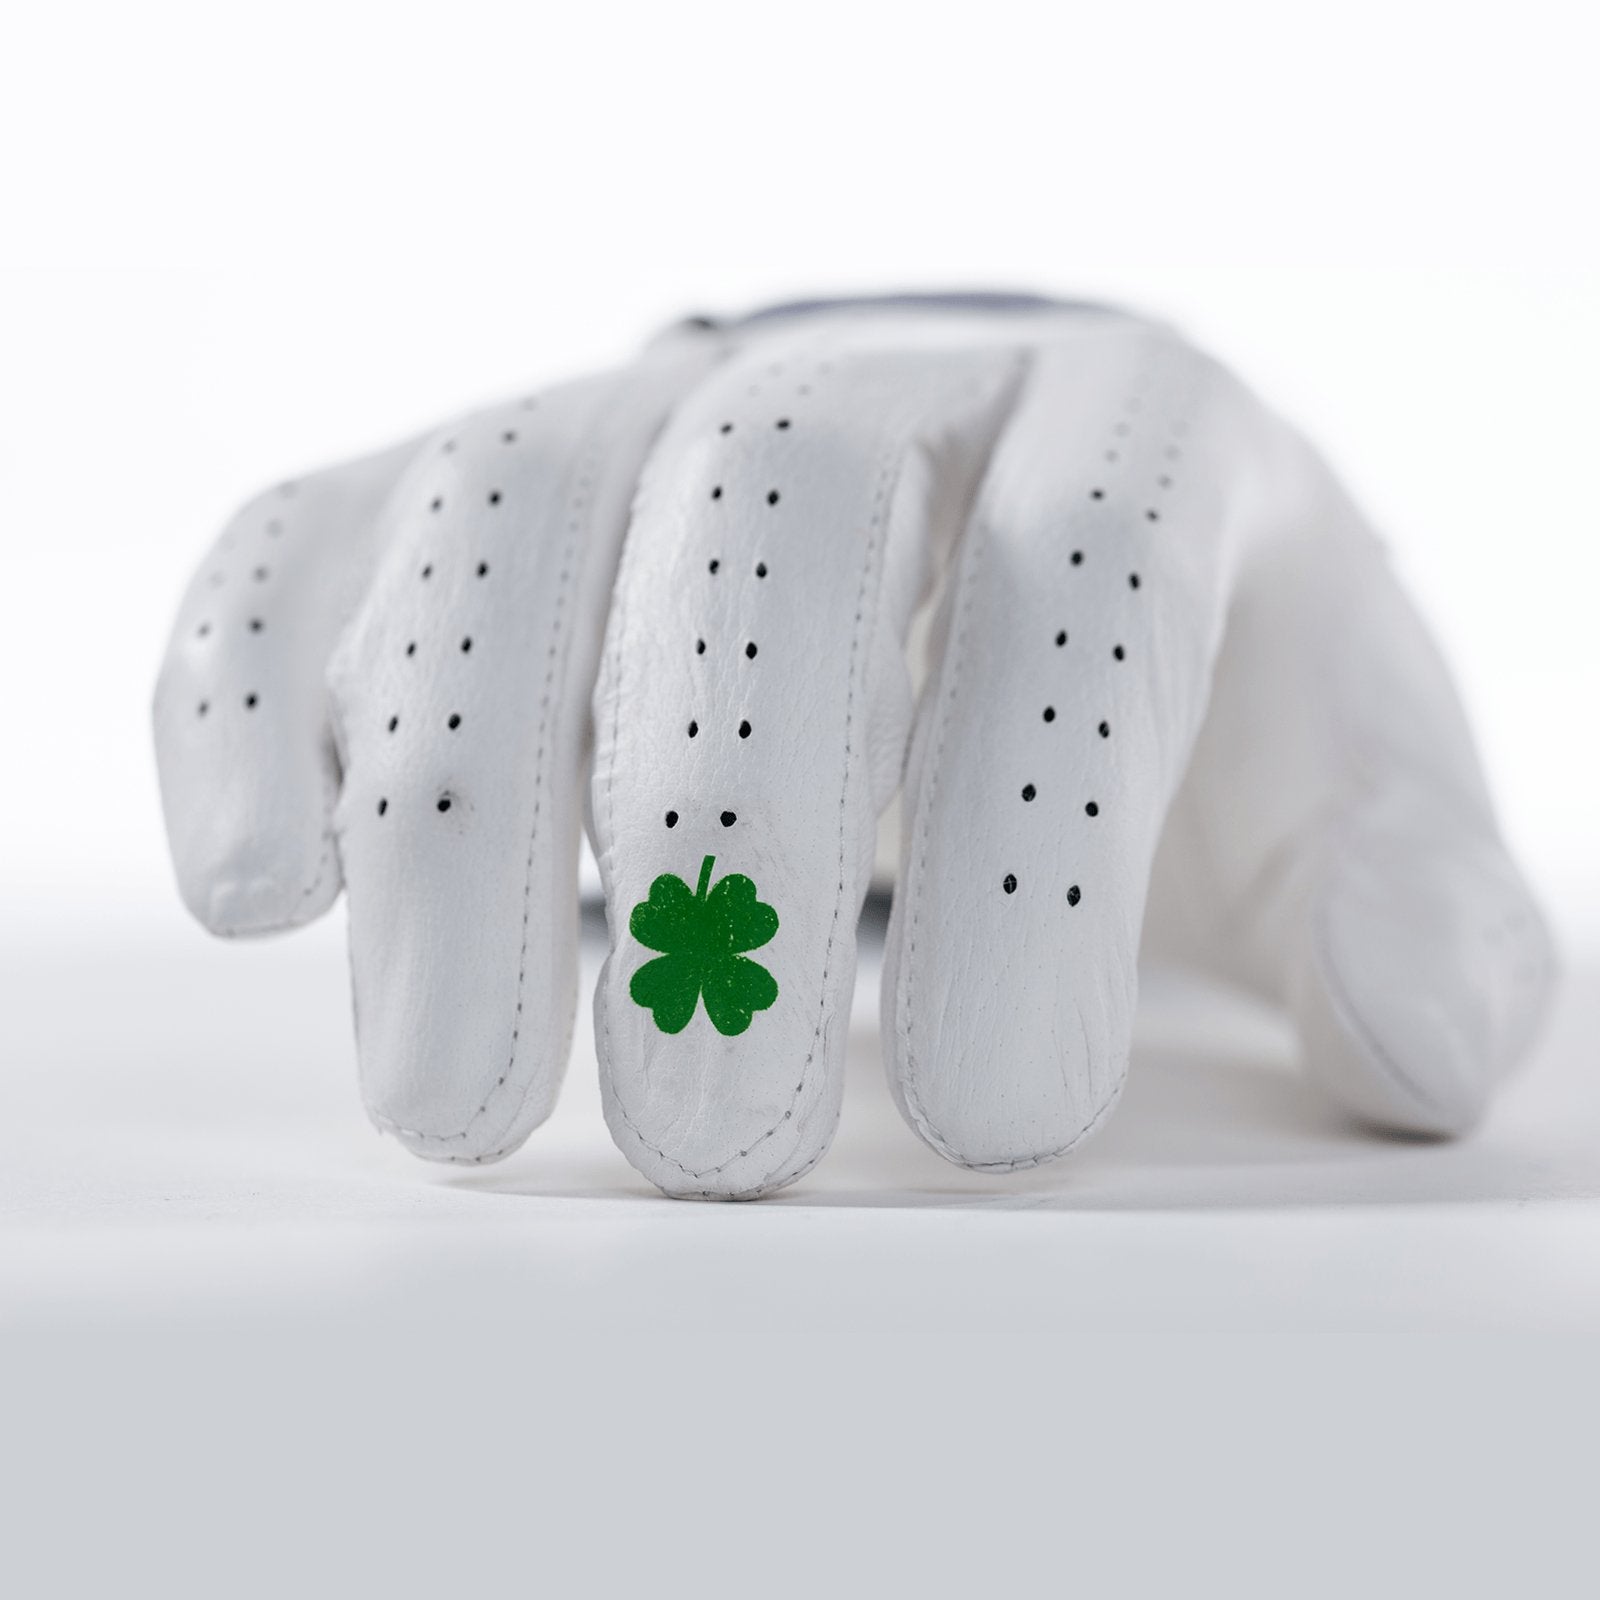 White Lucky Elite Tour Golf Glove - Bender Gloves